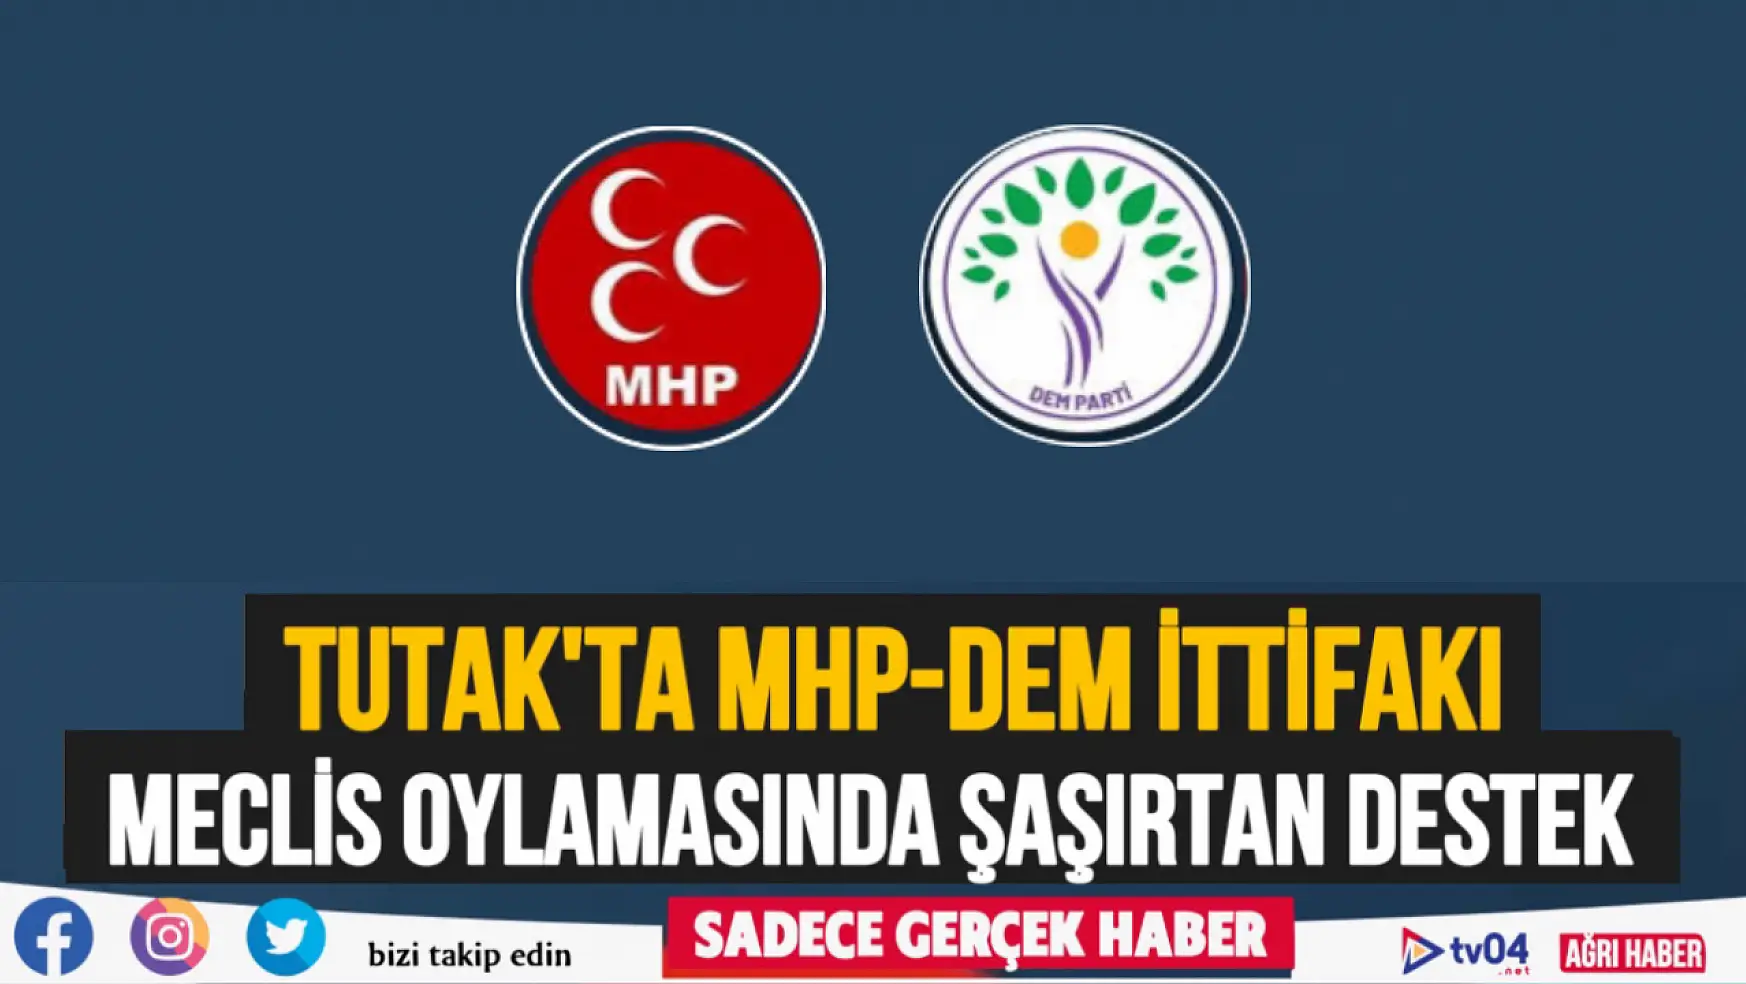 Tutak'ta MHP ve DEM İttifakı